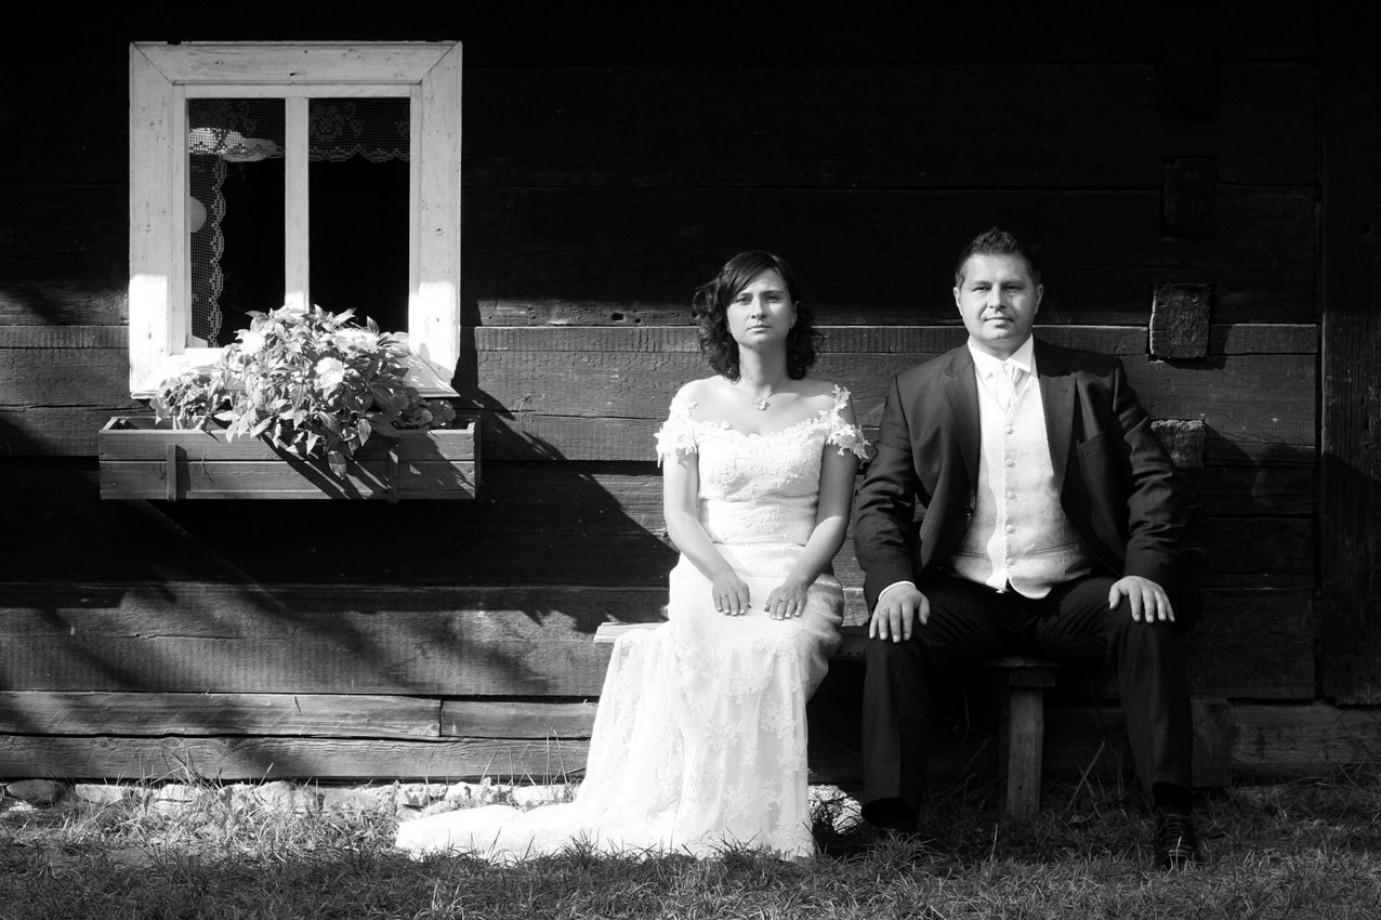 zdjęcia opole fotograf fotoszopart portfolio zdjecia slubne inspiracje wesele plener slubny sesja slubna